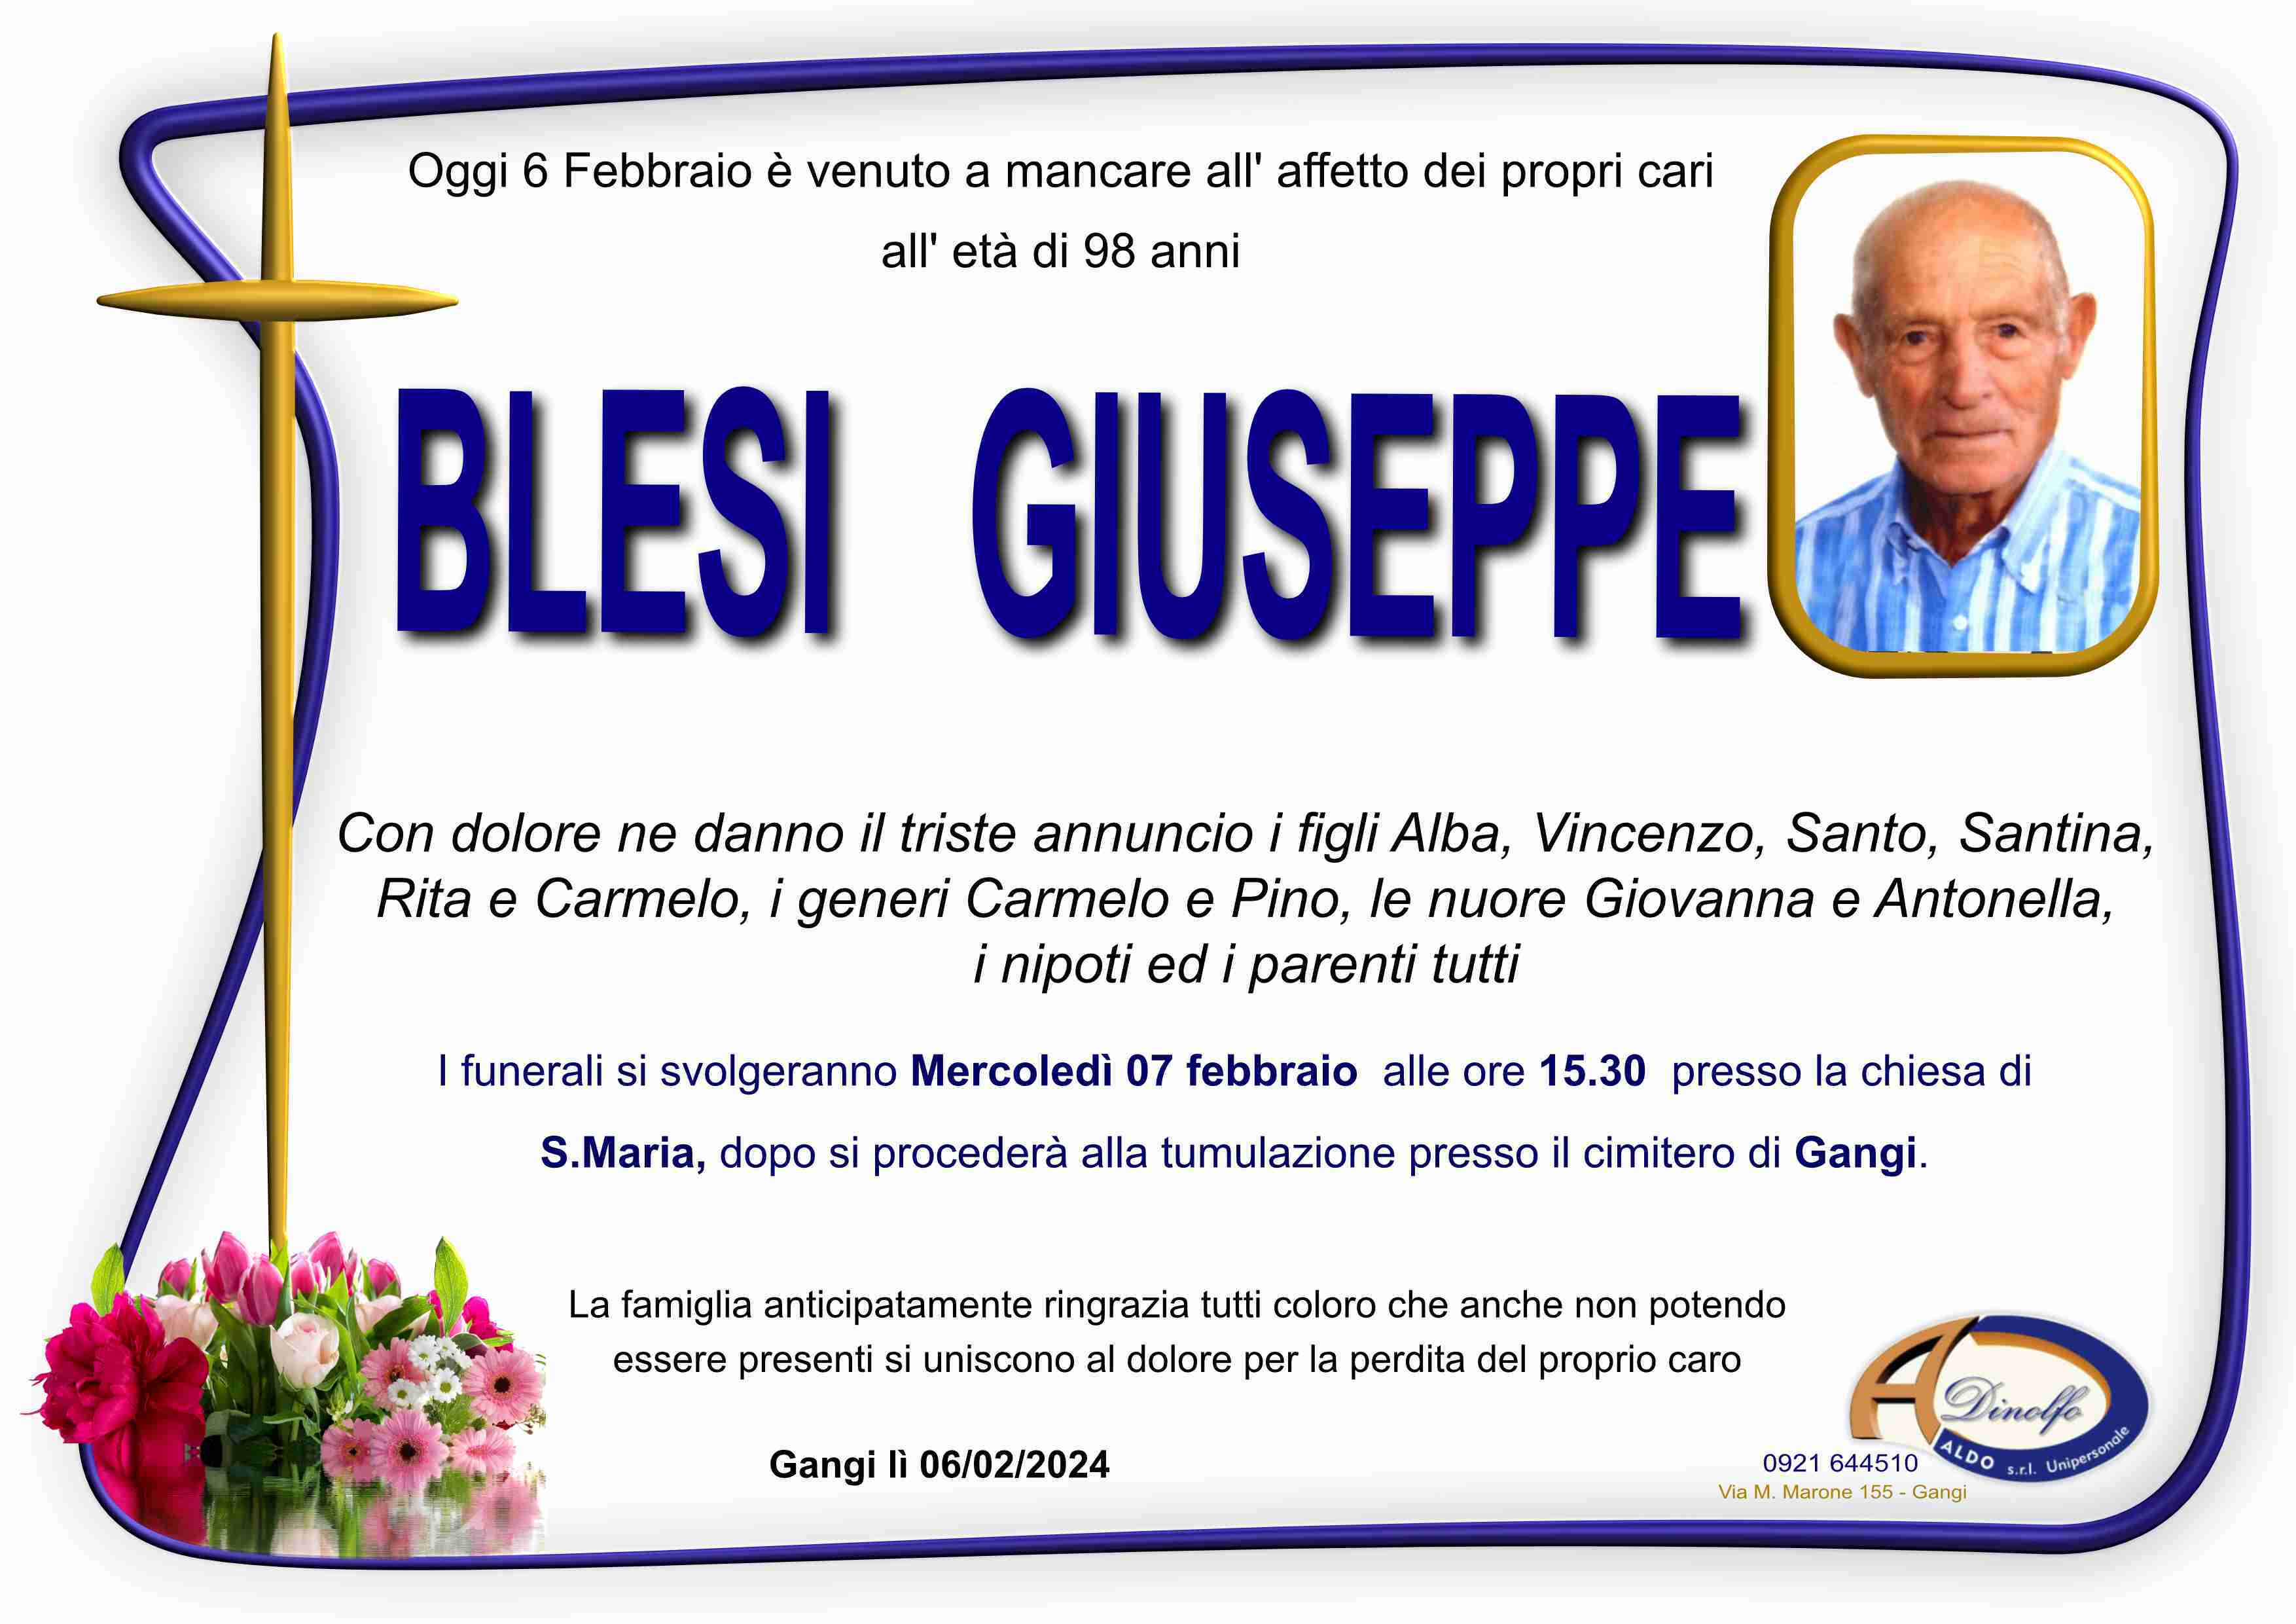 Giuseppe Blesi